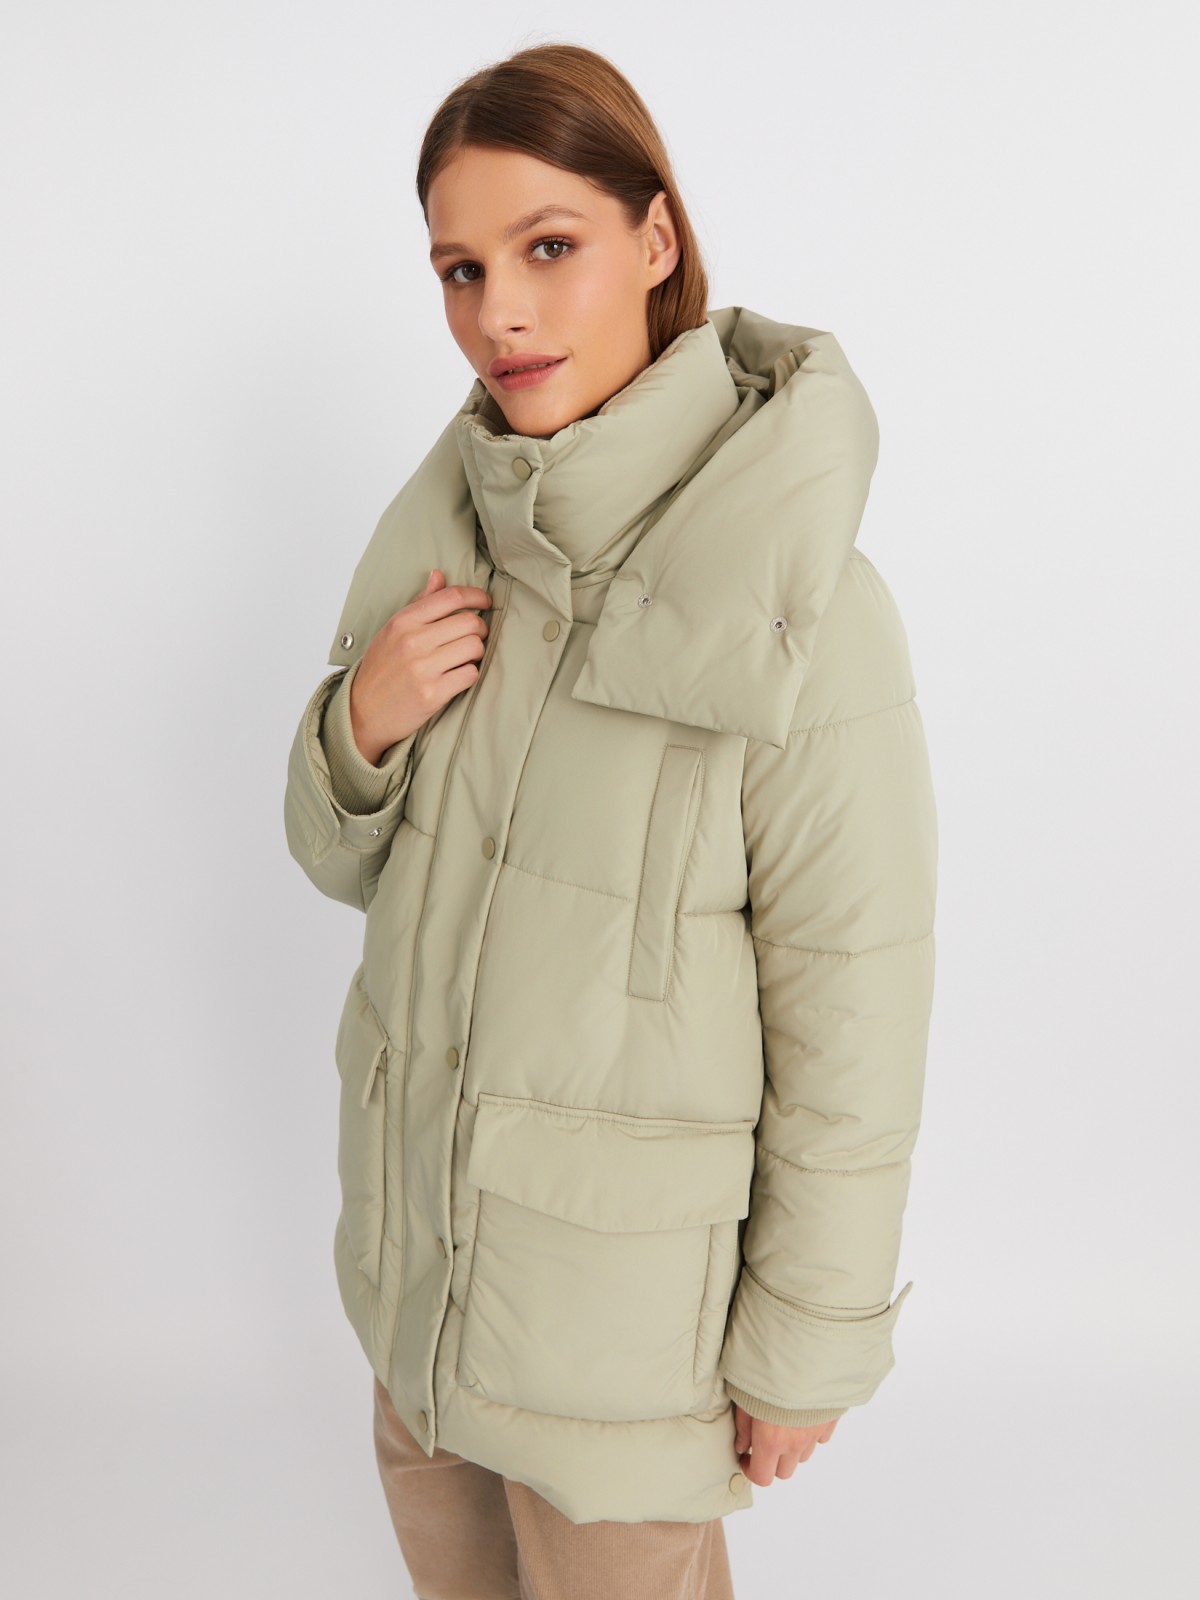 Тёплая куртка-пальто с капюшоном и боковыми шлицами zolla 022425212054, цвет хаки, размер XS - фото 3